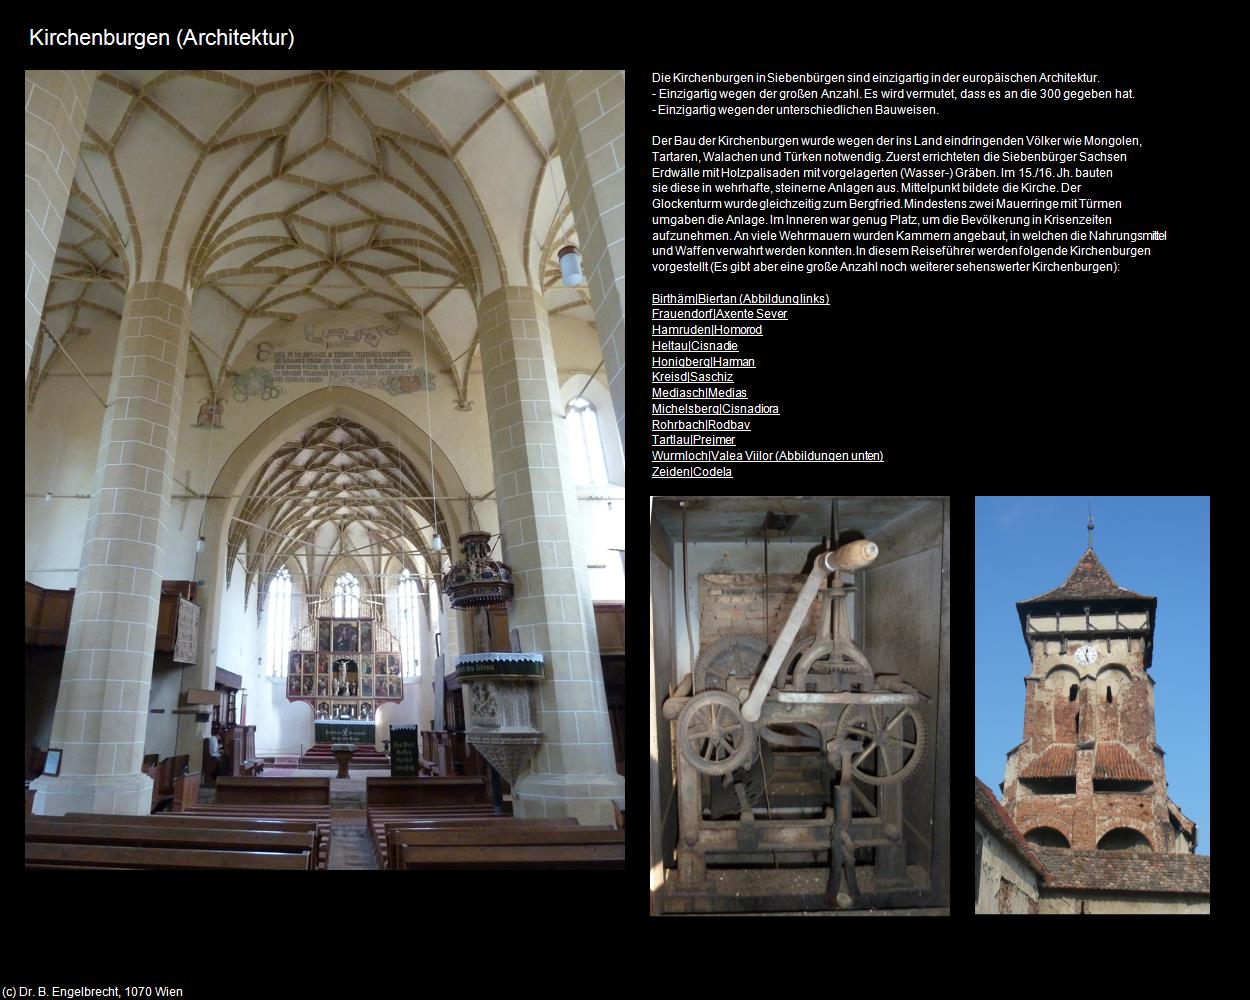 Kirchenburgen (Architektur) (Medias|Mediasch) in RUMÄNIEN(c)B.Engelbrecht